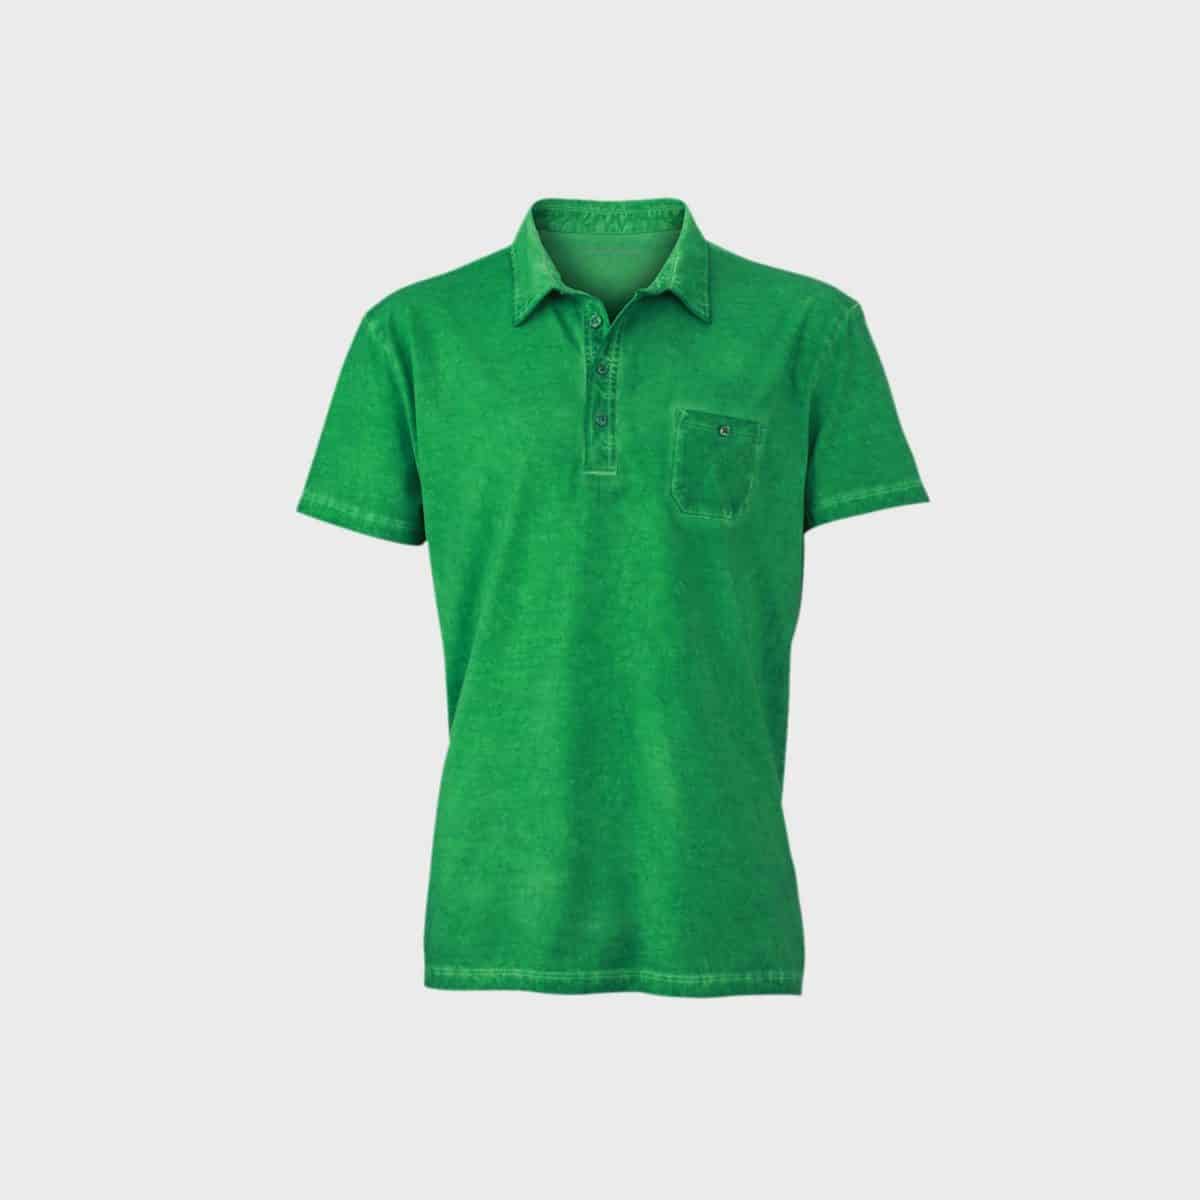 gispy-polo-t-shirt-herren-ferngreen-kaufen-besticken_stickmanufaktur